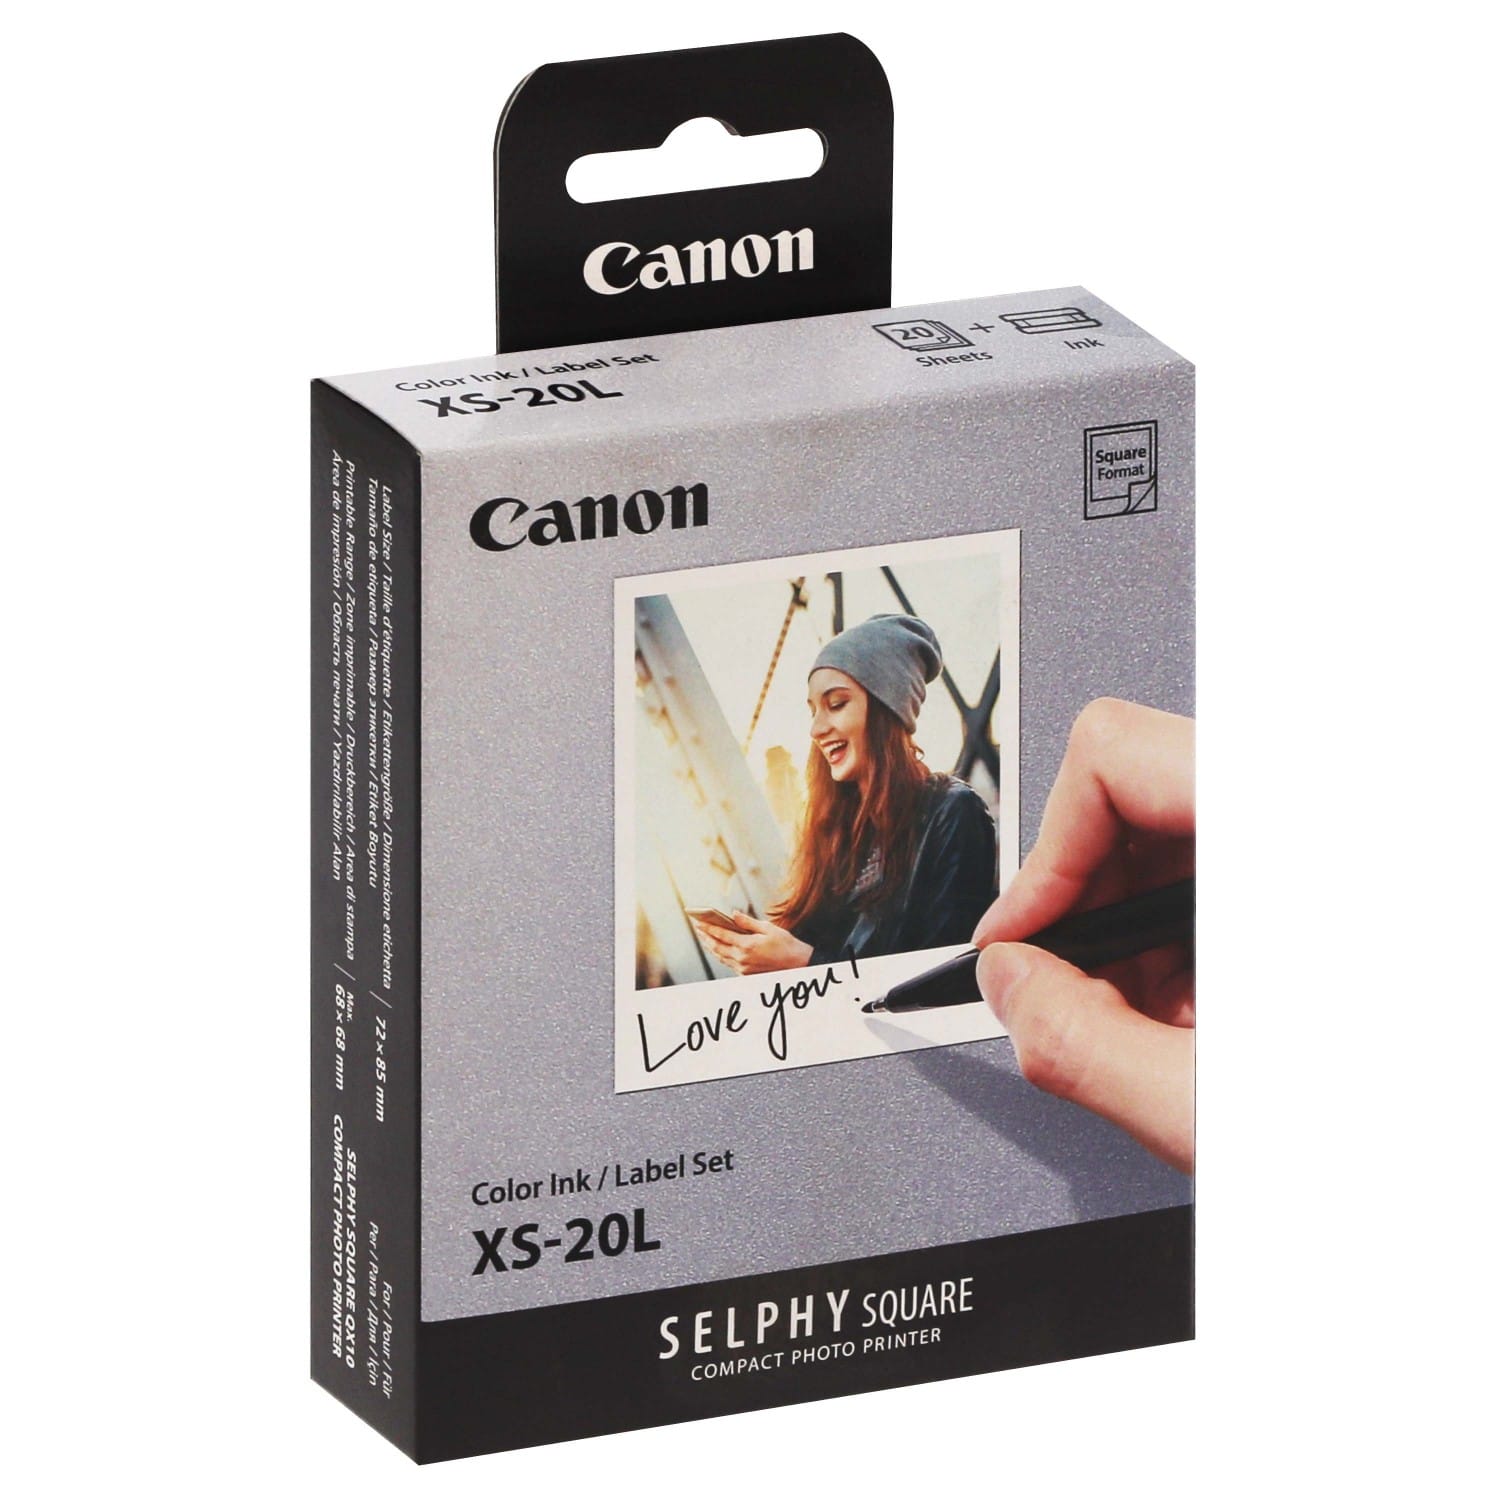 Kit cassette à Ruban avec Papier pour l'imprimante Canon Selphy RP